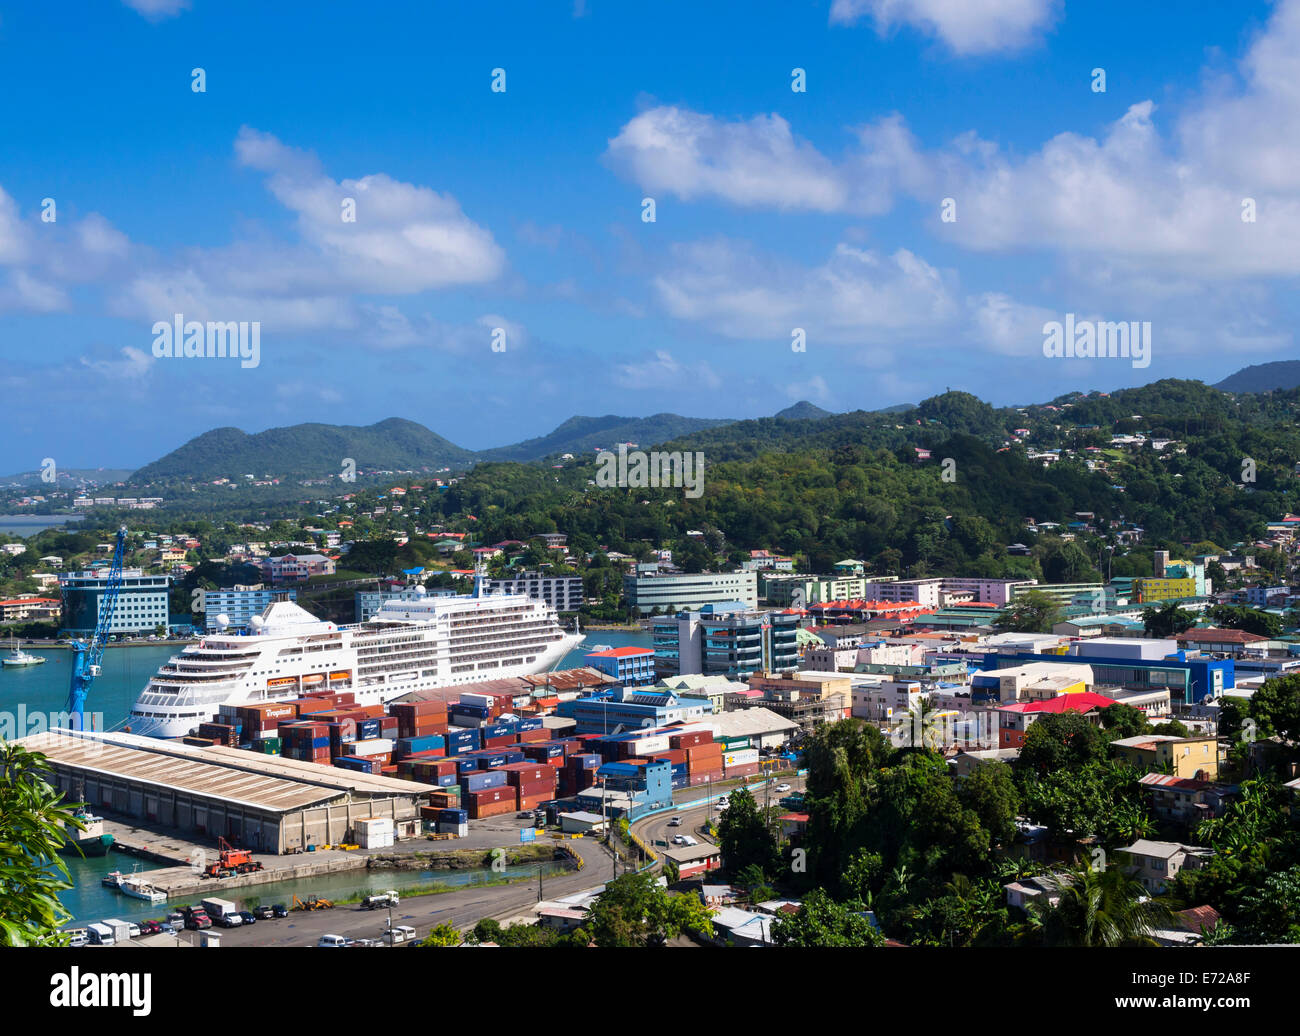 Le paysage urbain de Castries et le port à conteneurs, l'île de Sainte-Lucie, Petites Antilles, îles du Vent, Sainte-Lucie Banque D'Images